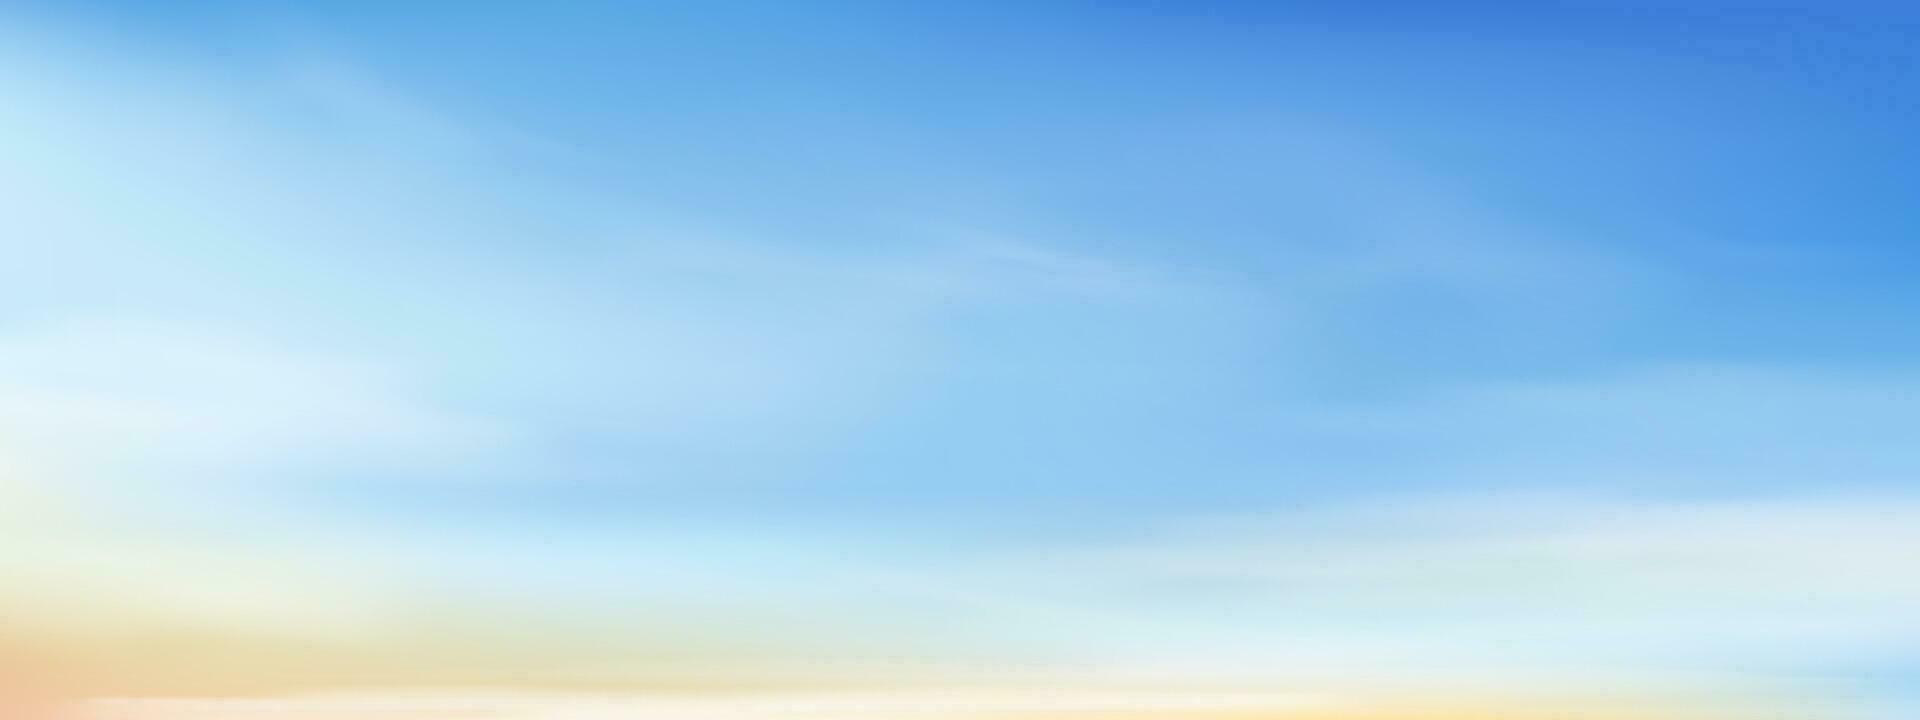 Blau Himmel und Gelb mit Altostratus Wolken Hintergrund, Vektor Karikatur Morgen Himmel mit Cirrus Wolken, Konzept alle saisonal Horizont Banner im sonnig Tag, Illustration Natur Frühling Sommer- Hintergrund